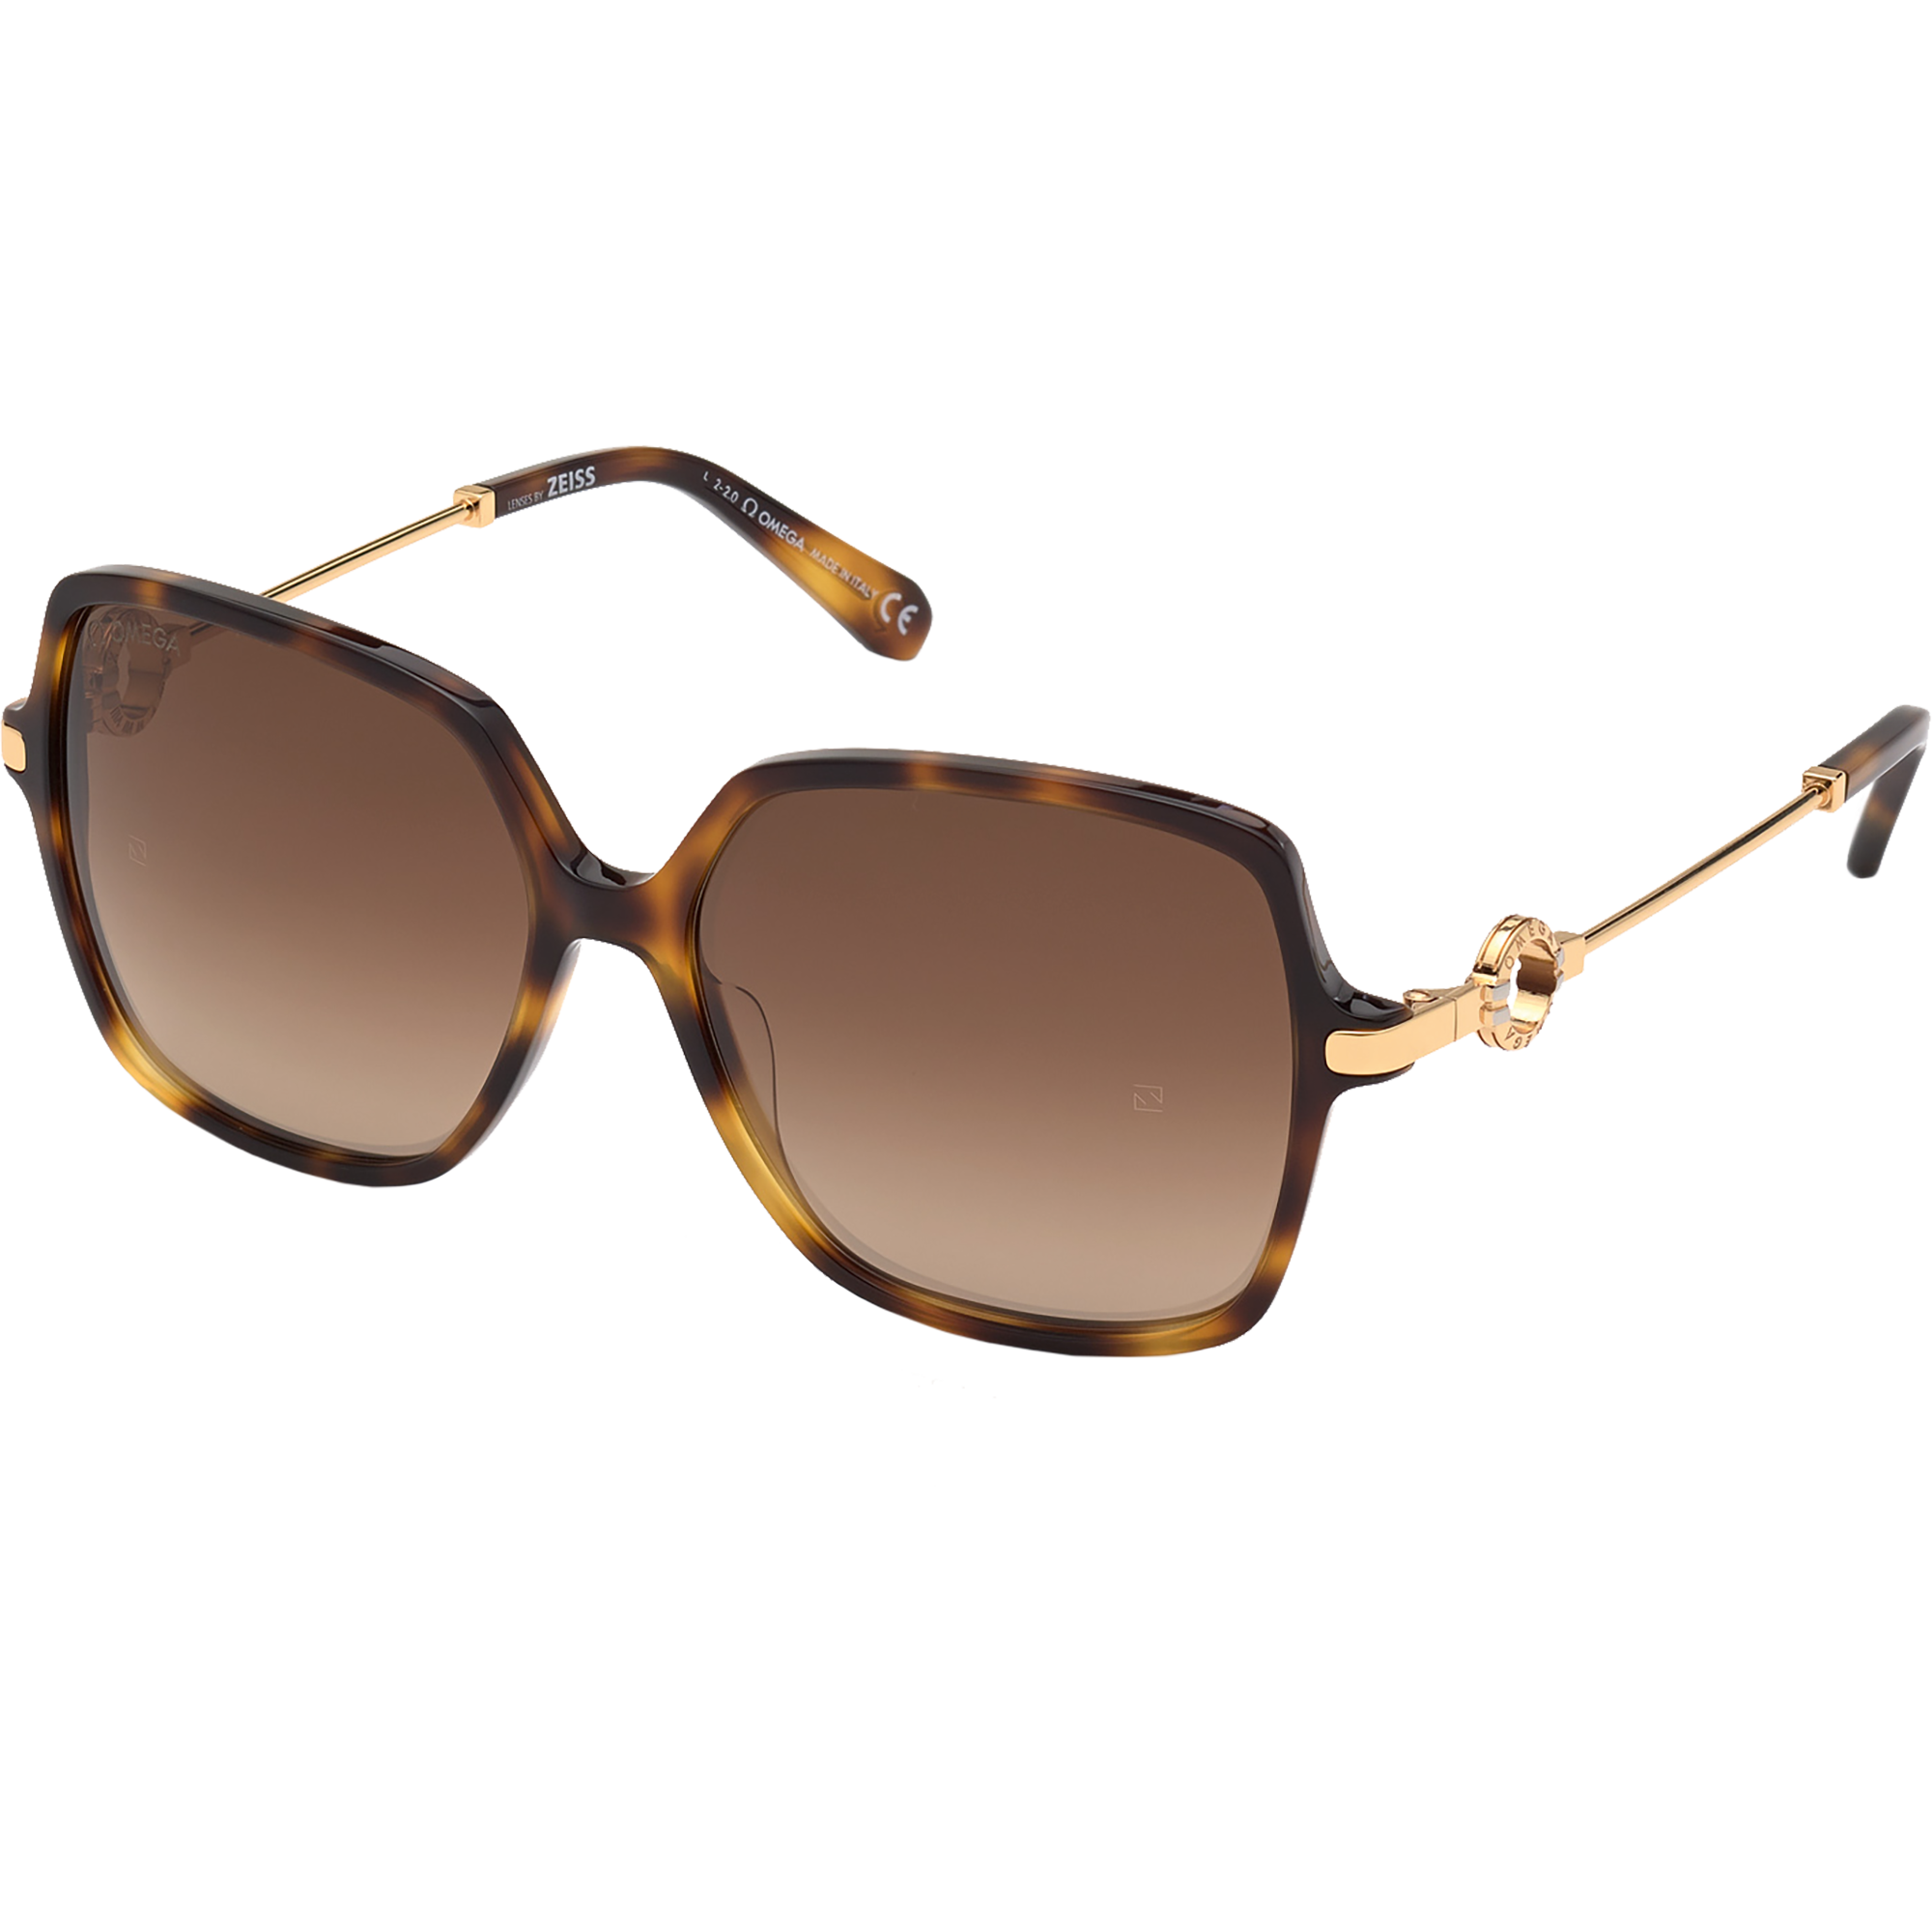 Солнцезащитные очки - Квадратная форма, Женские очки - OM0033-H5952G